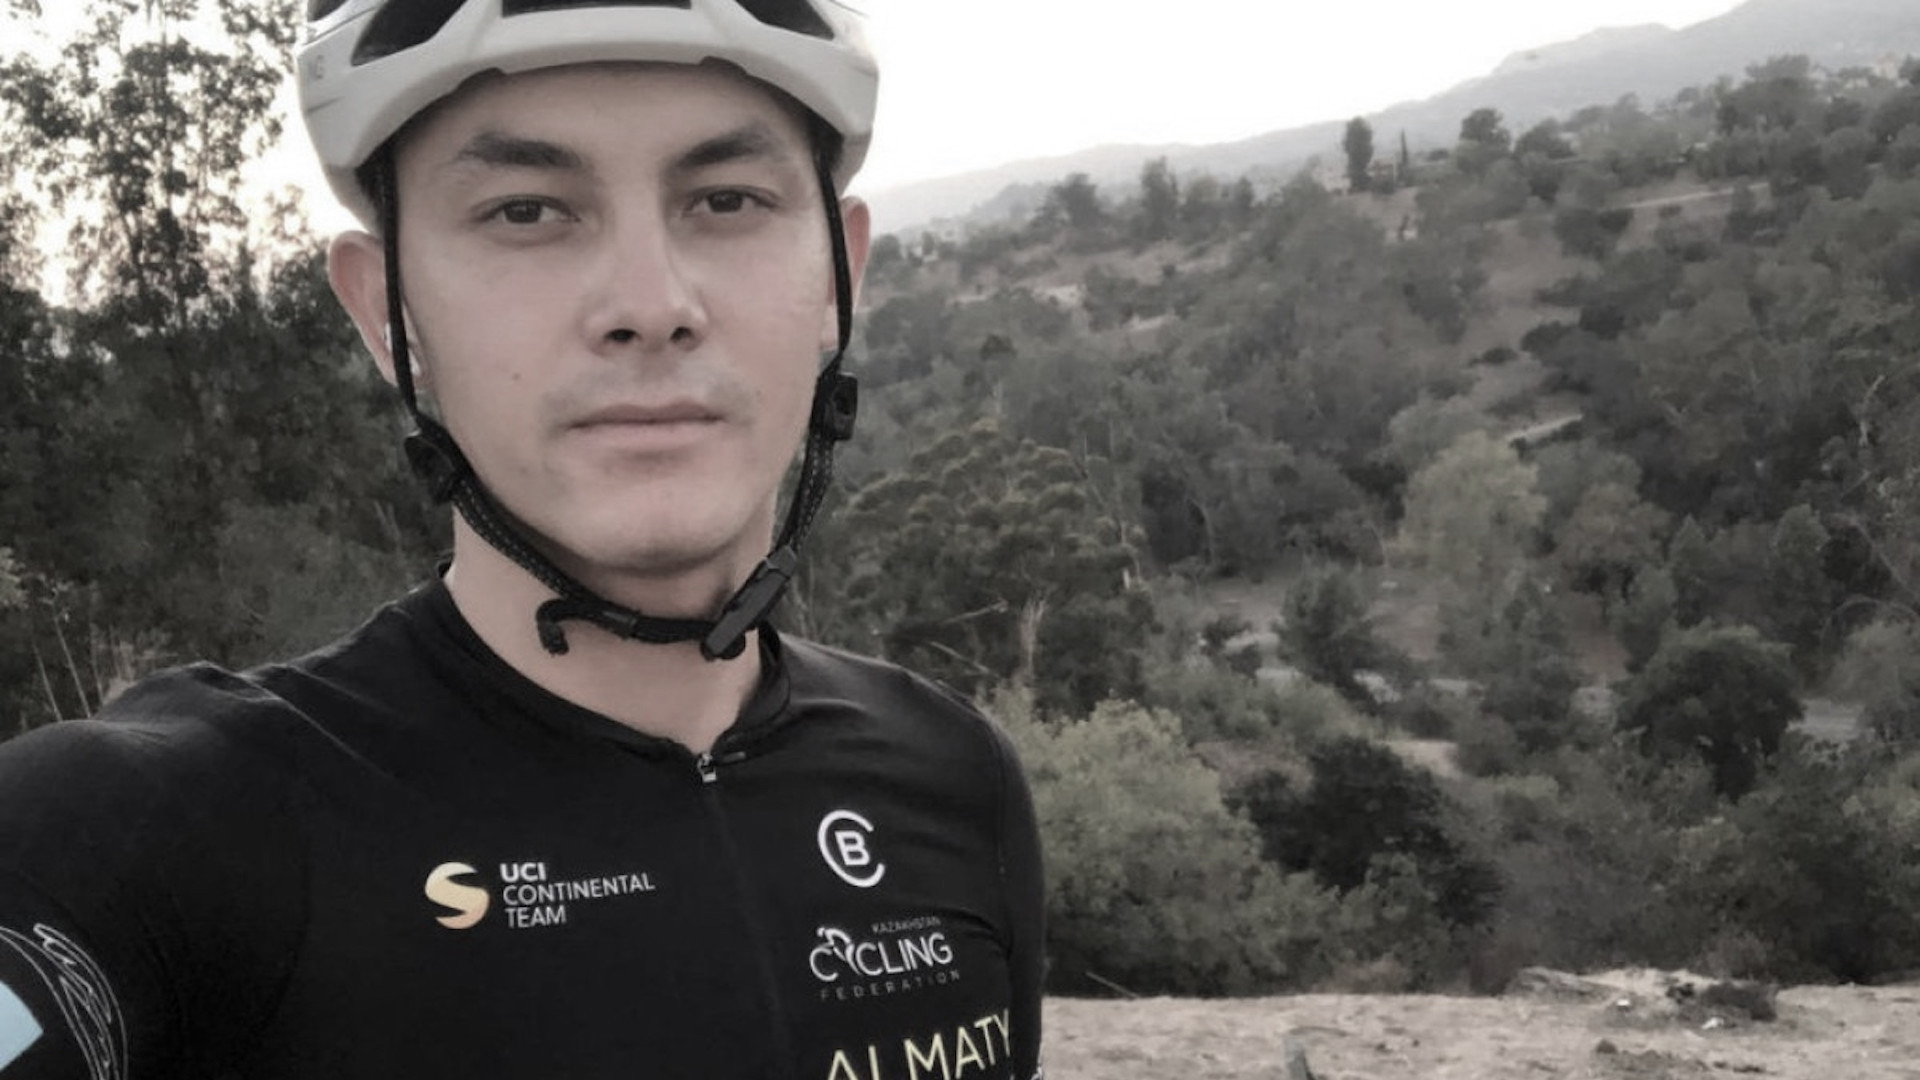 Сообщается о смерти казахстанского велосепедиста Динмухаммеда Улысбаева в возрасте 23 лет